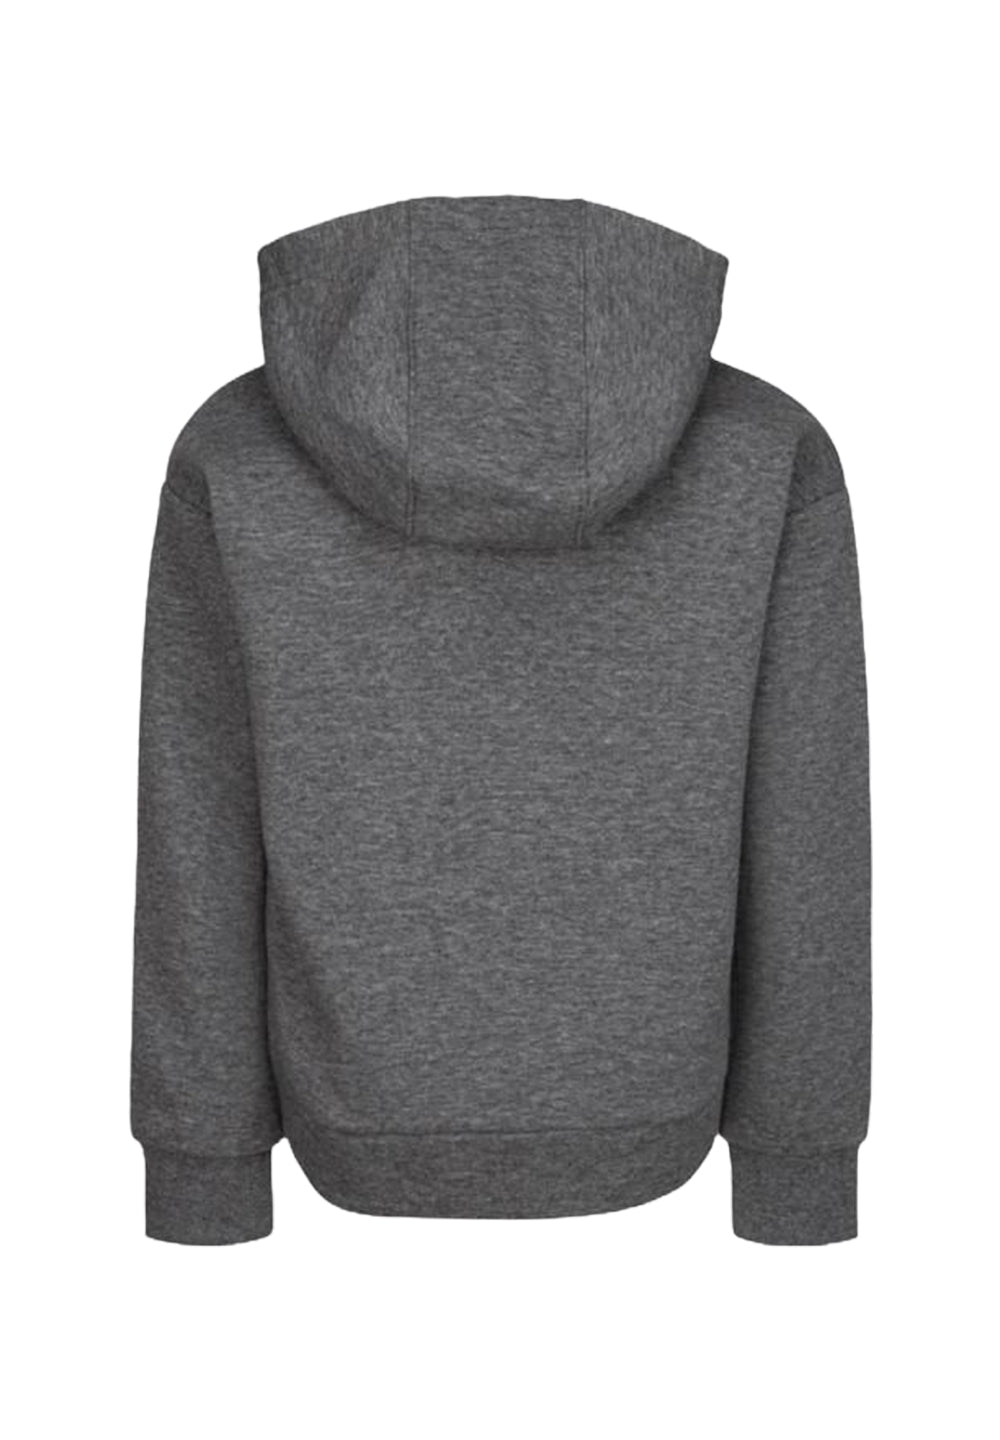 Gray zip sweatshirt for girls